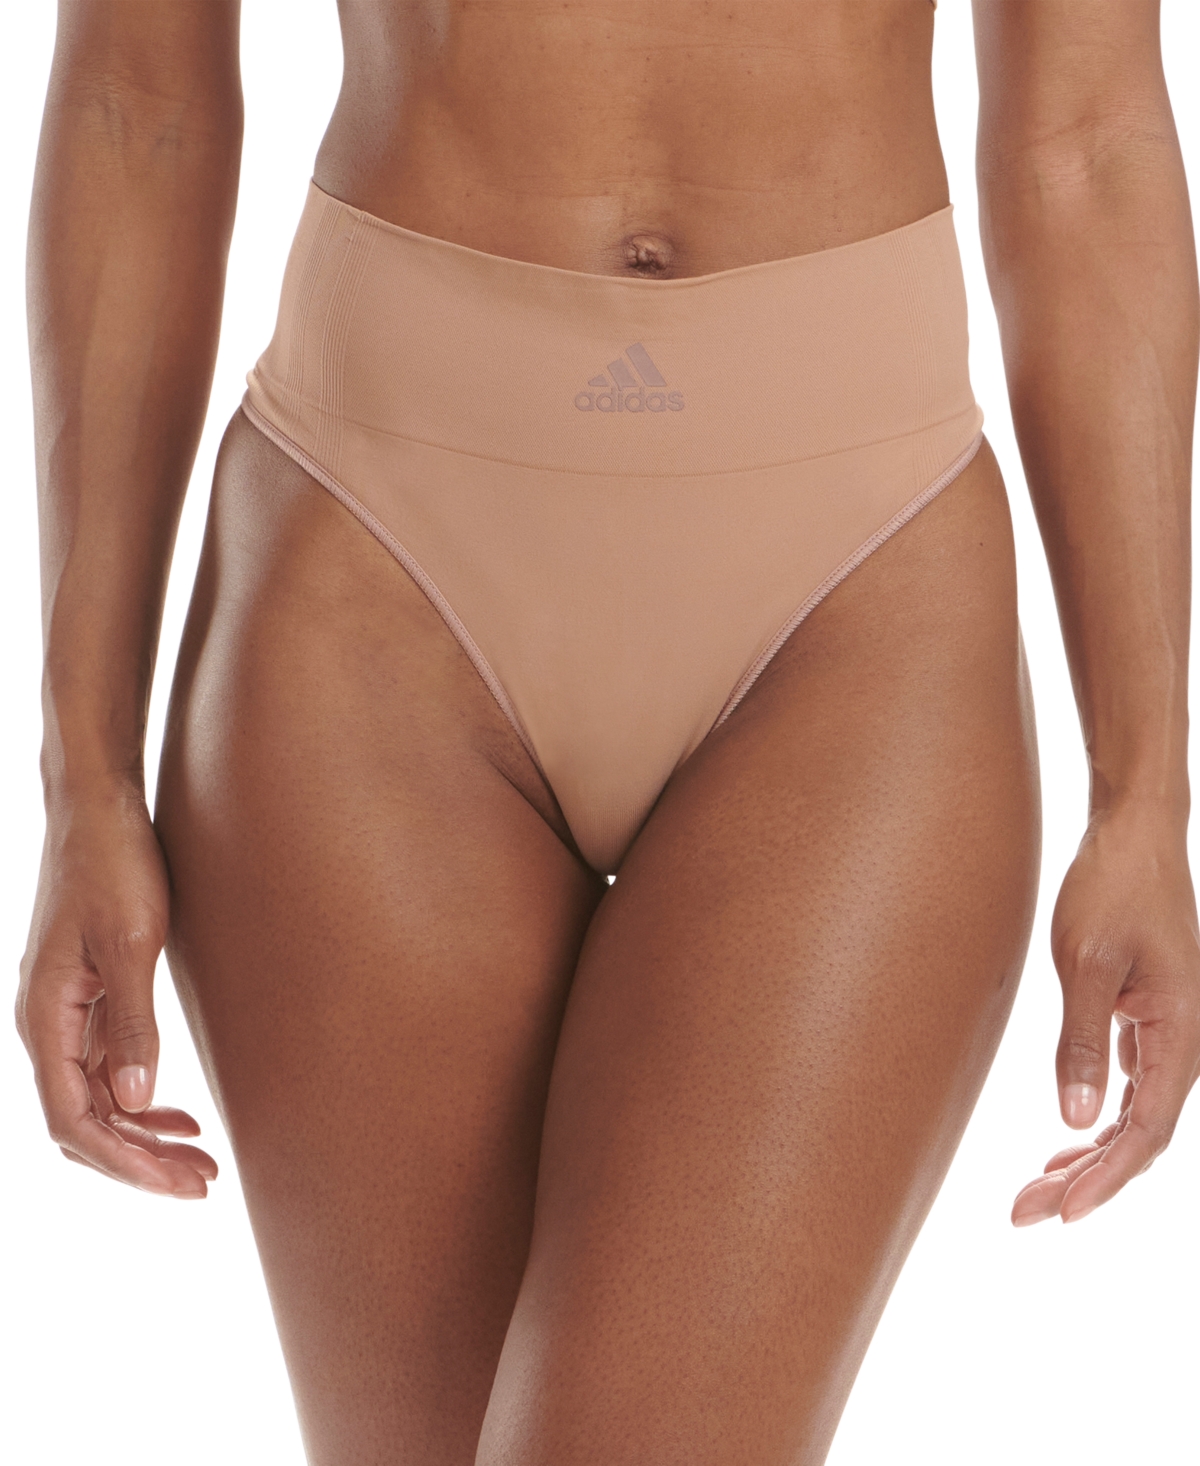 Adidas Women's Seamless Thong Underwear (Bluebird, XS) - 4A1H64